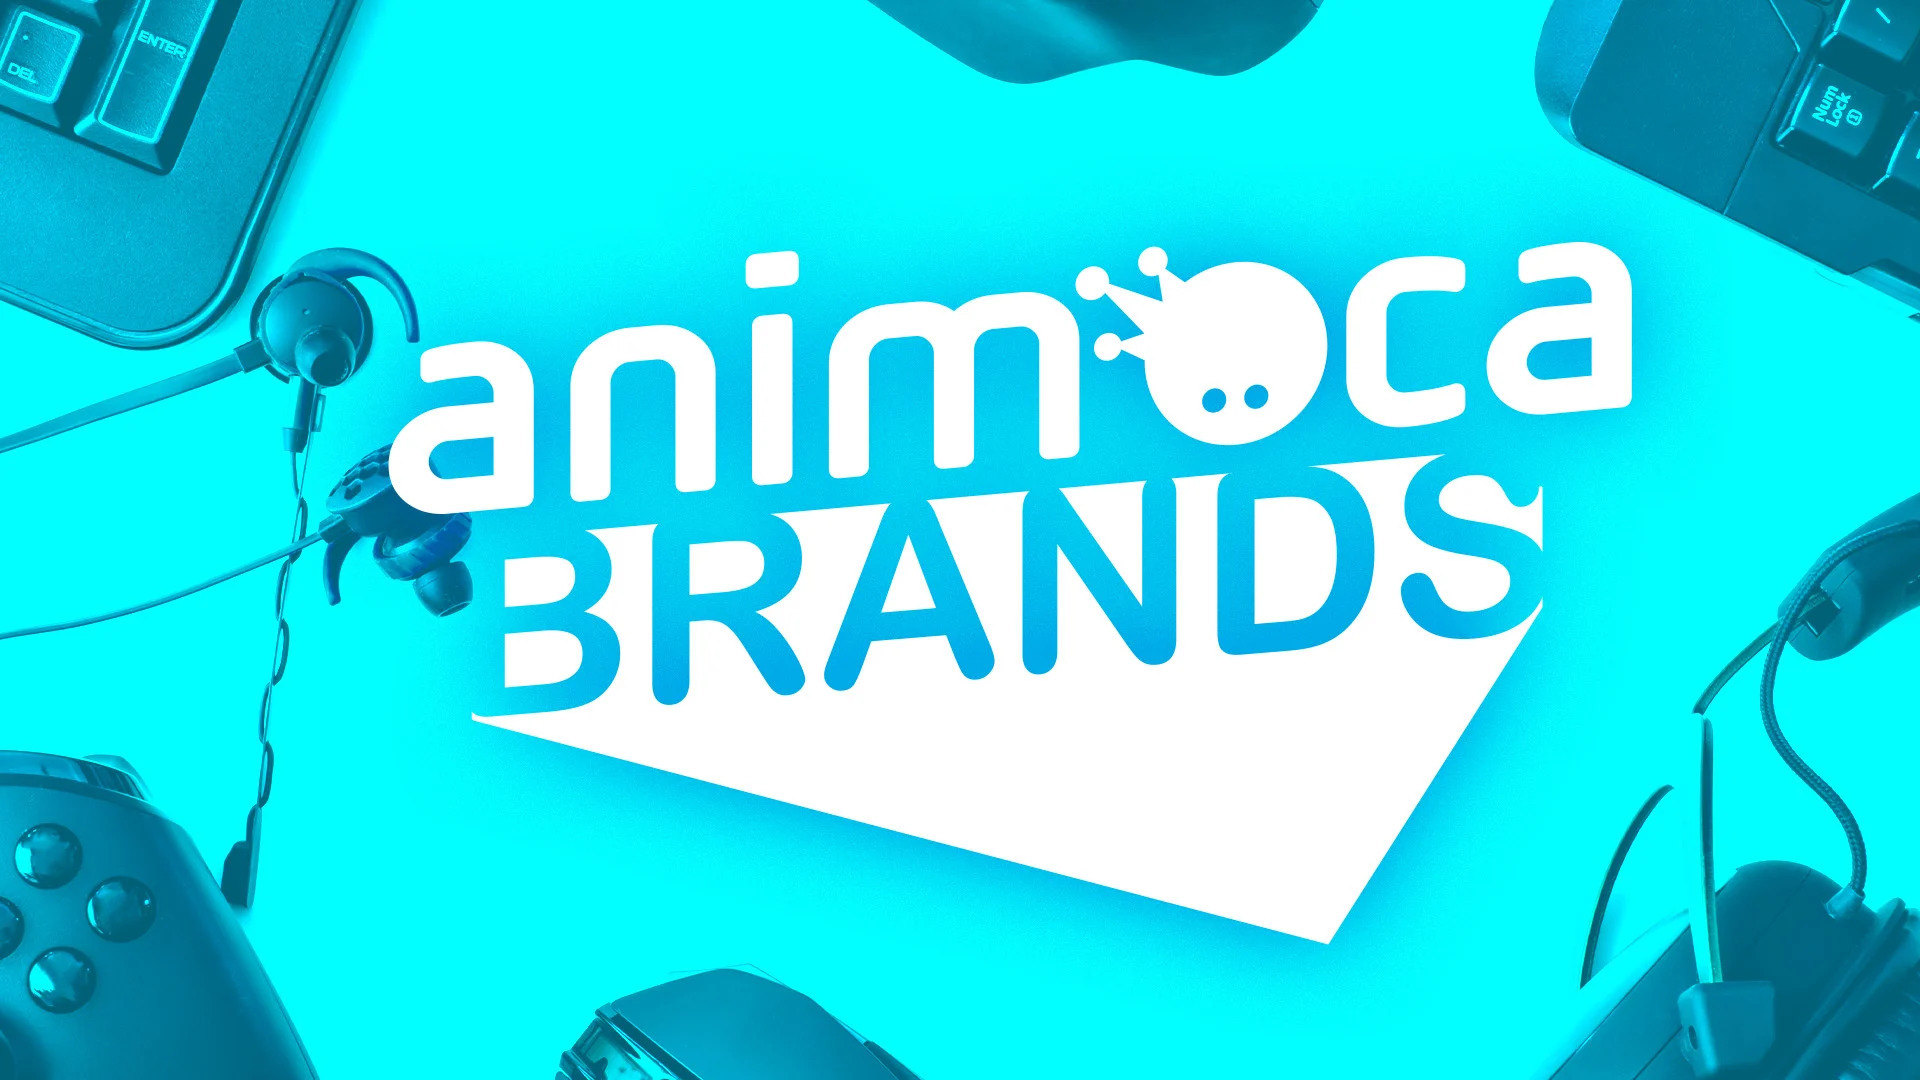 Animoca Brands Nhật Bản gọi vốn 45 triệu USD, định giá 500 triệu USD trước vòng huy động